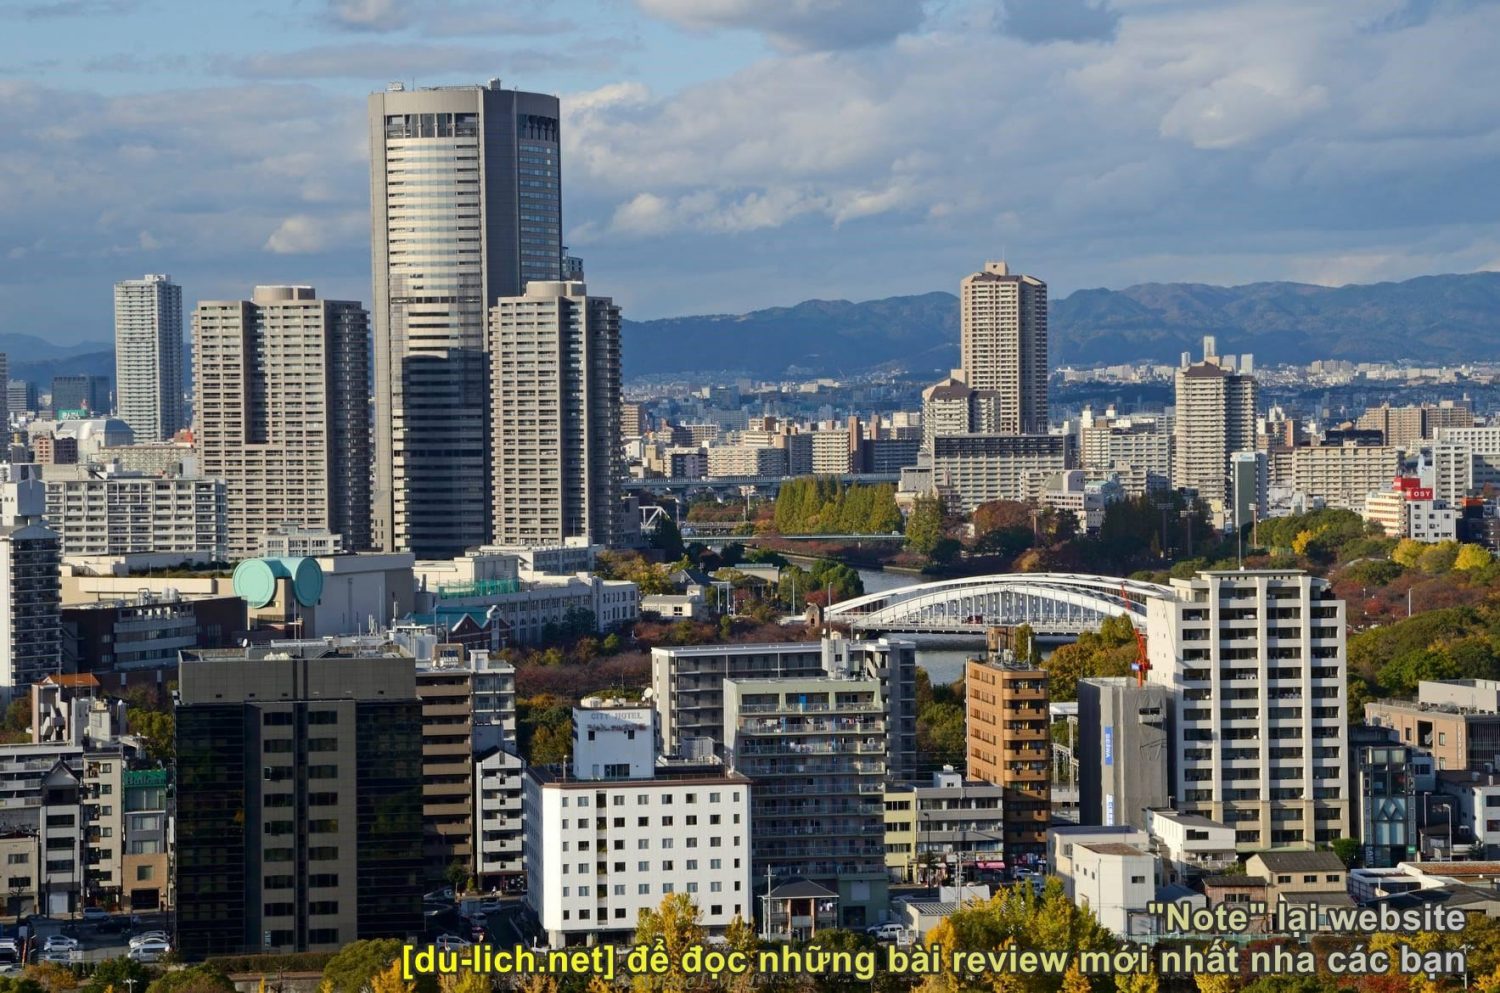 Khi leo lên tháp Tenshukaku, có thể ngắm nhìn cả thành phố Osaka từ trên cao